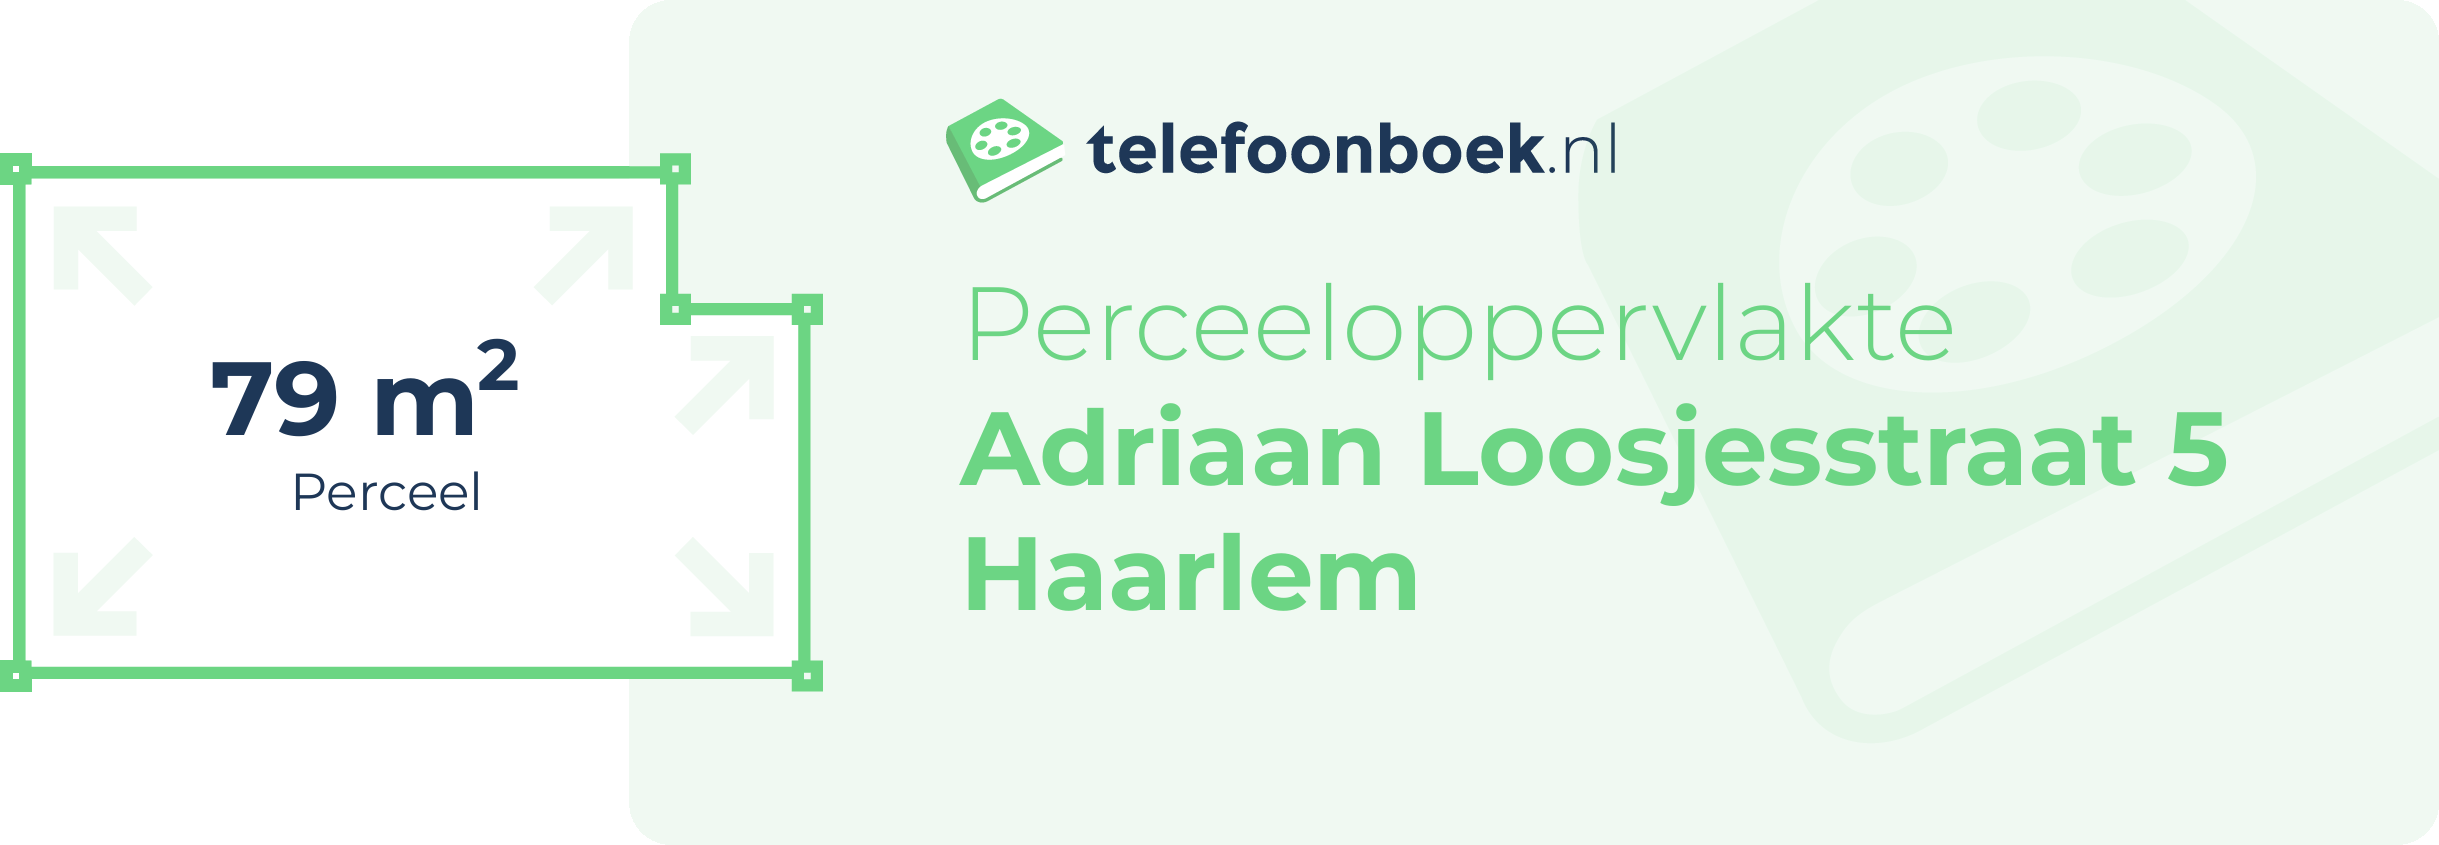 Perceeloppervlakte Adriaan Loosjesstraat 5 Haarlem